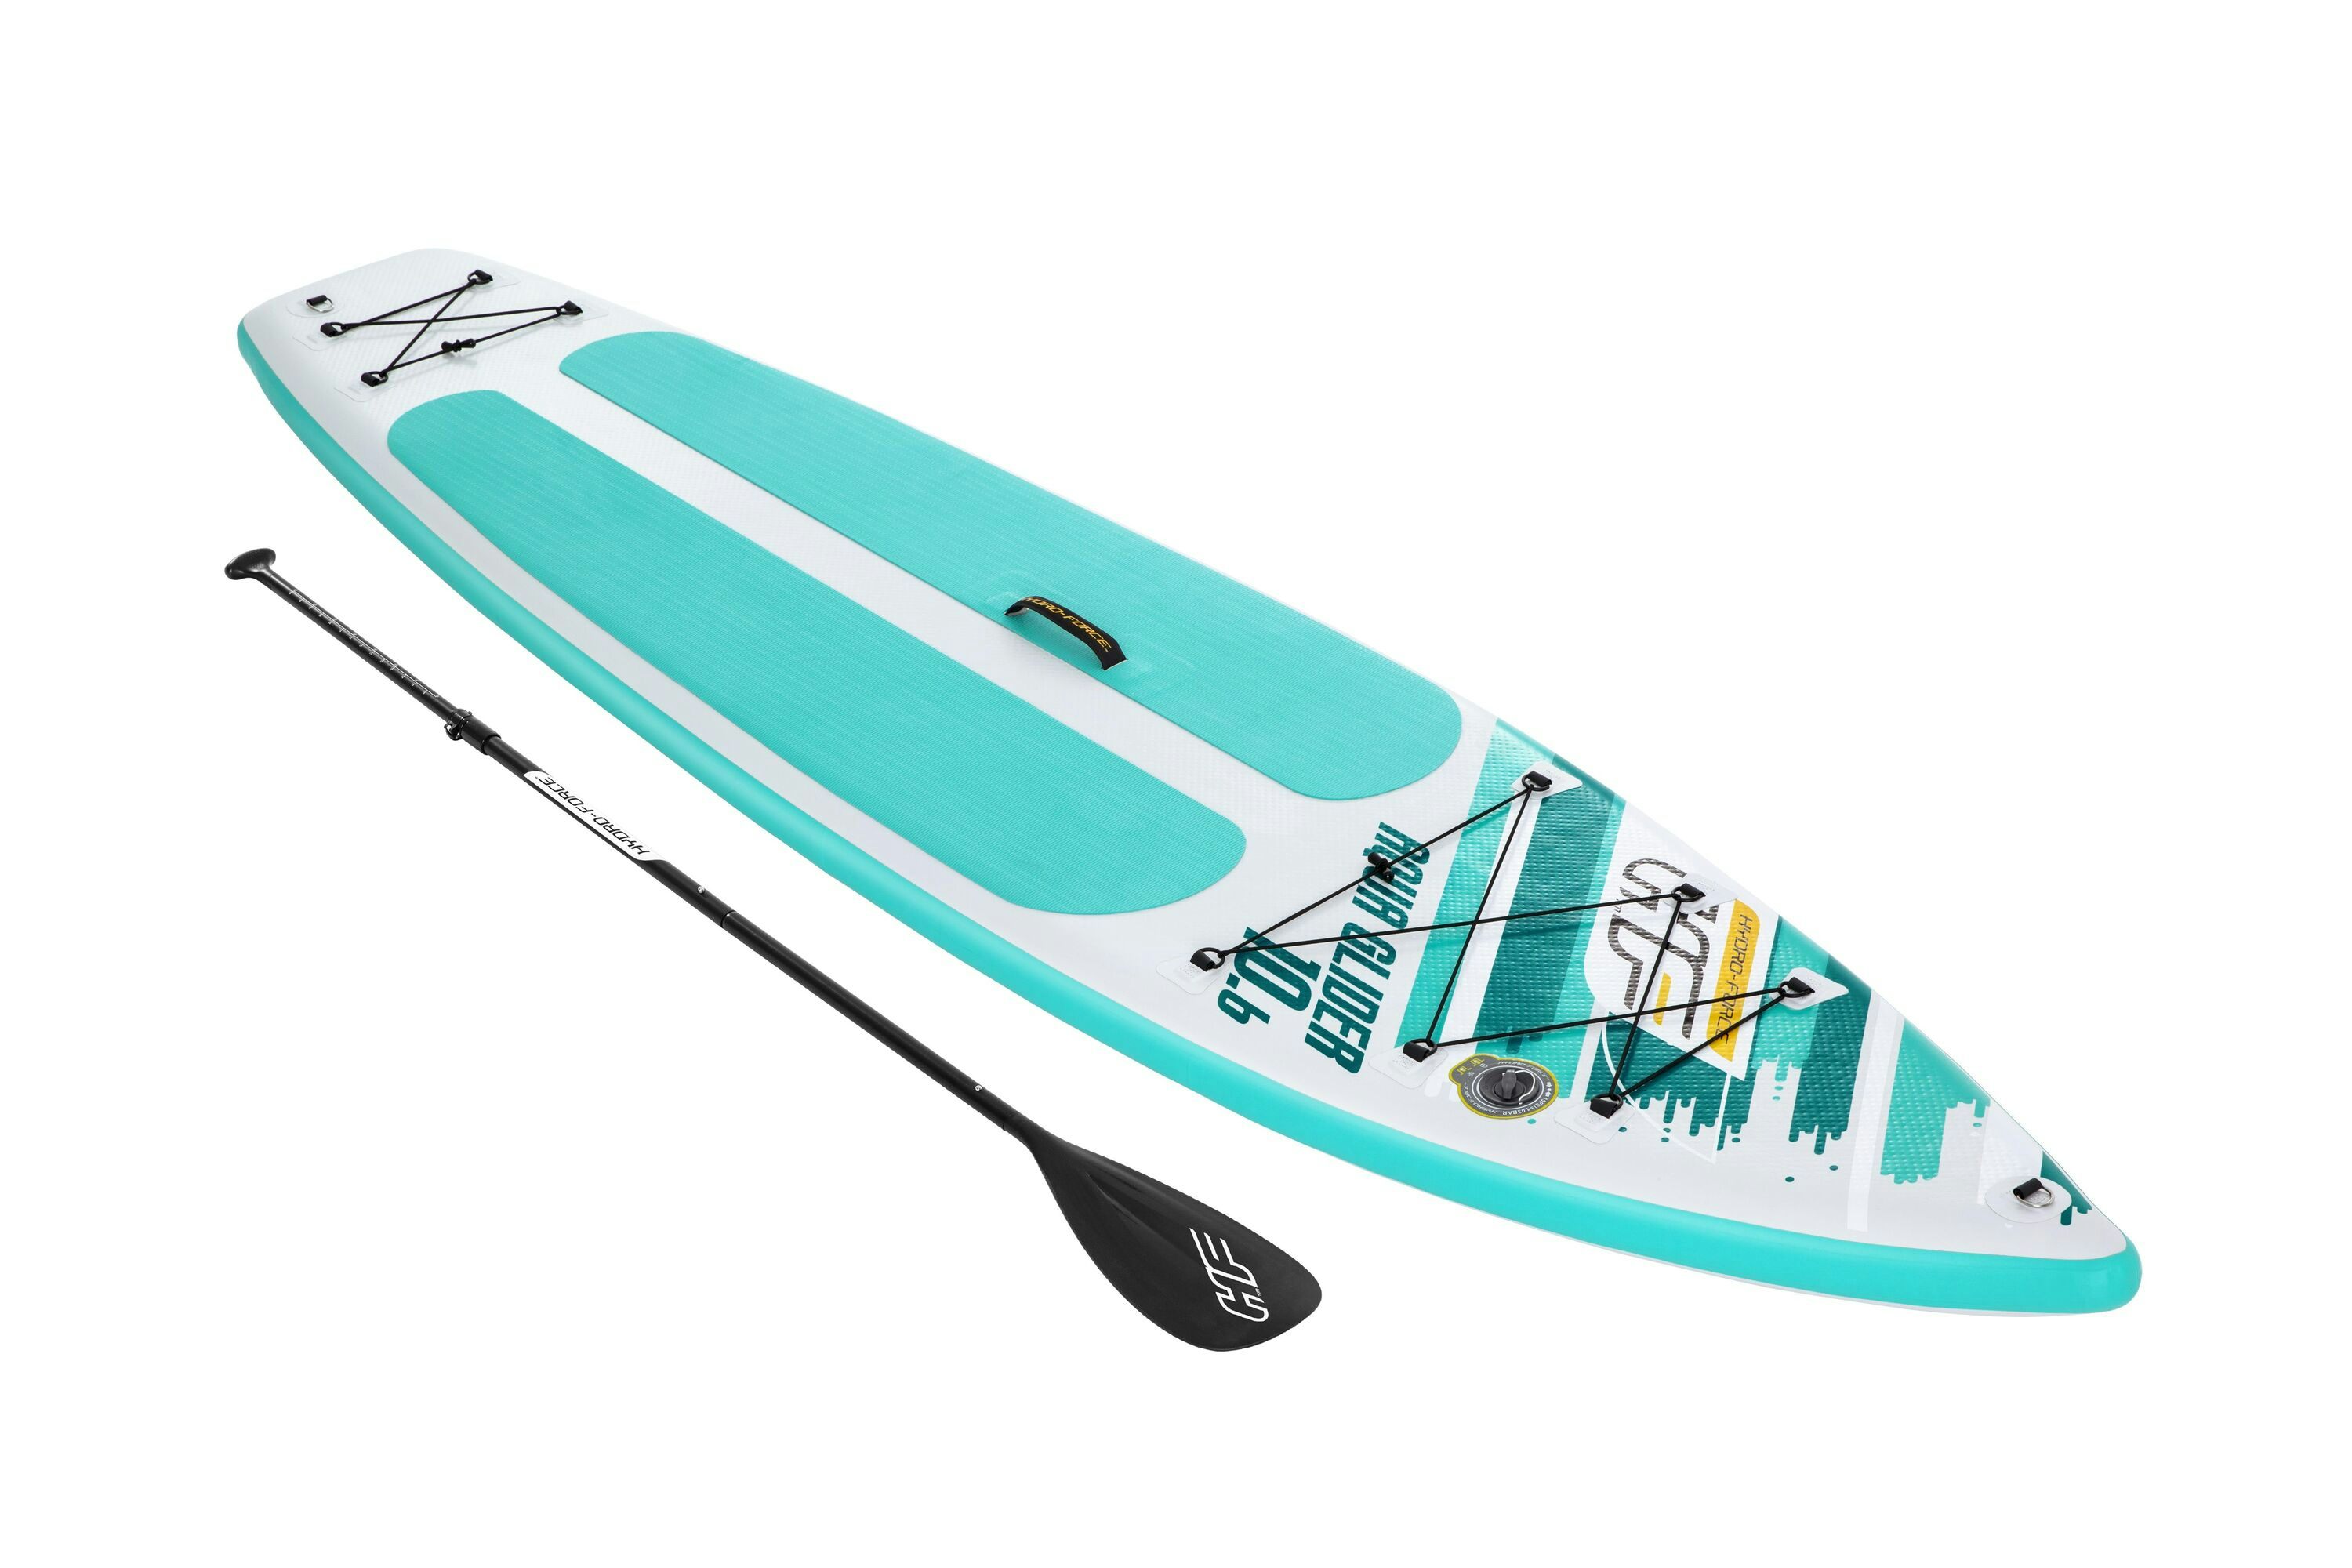 Sports d'eau Paddle SUP gonflable Hydro-Force™ Aqua Glider, 320 x 79 x 12 cm avec pagaie, leash, pompe et sac à dos de transport Bestway 1